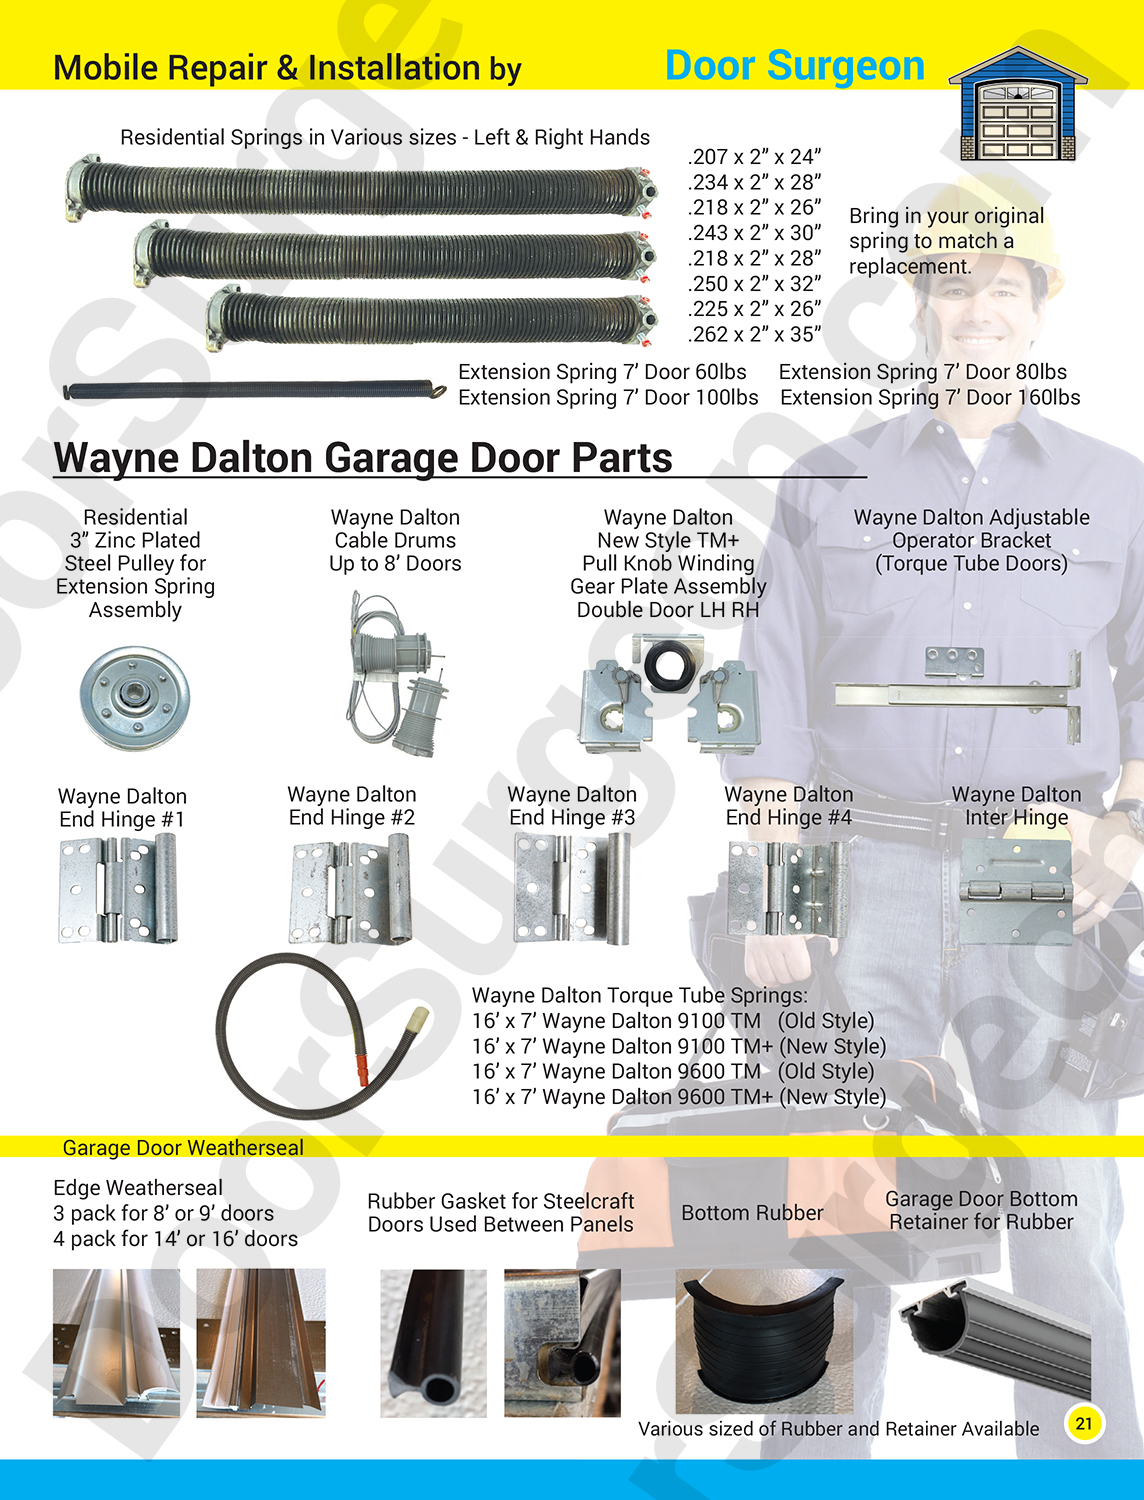 Garage door part solutions for home. Garage door repairs, replacement parts and new garage doors.